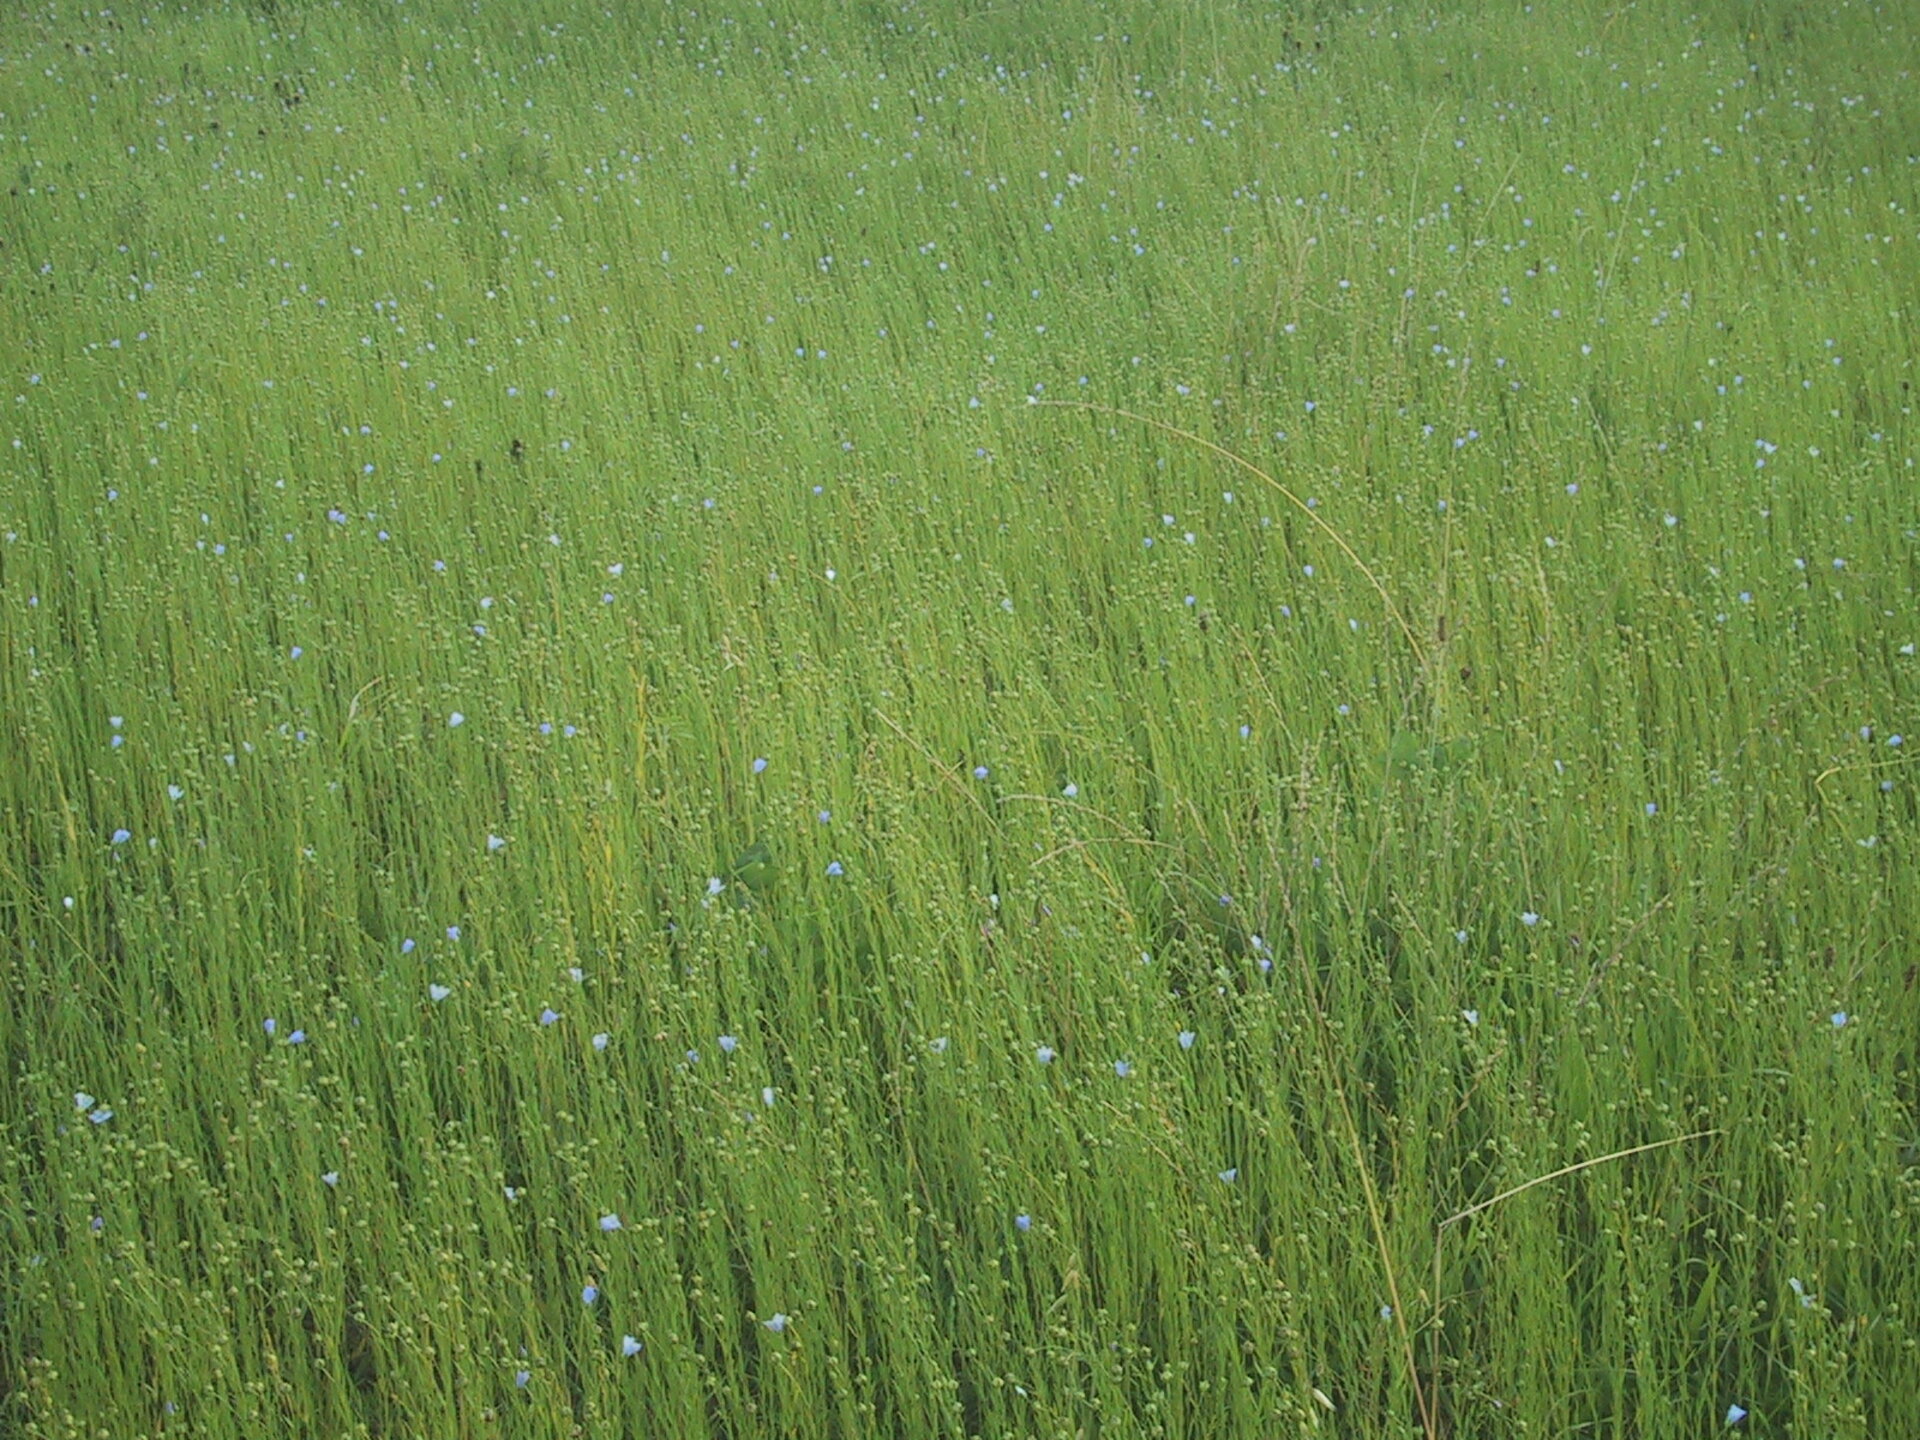 Field of flax